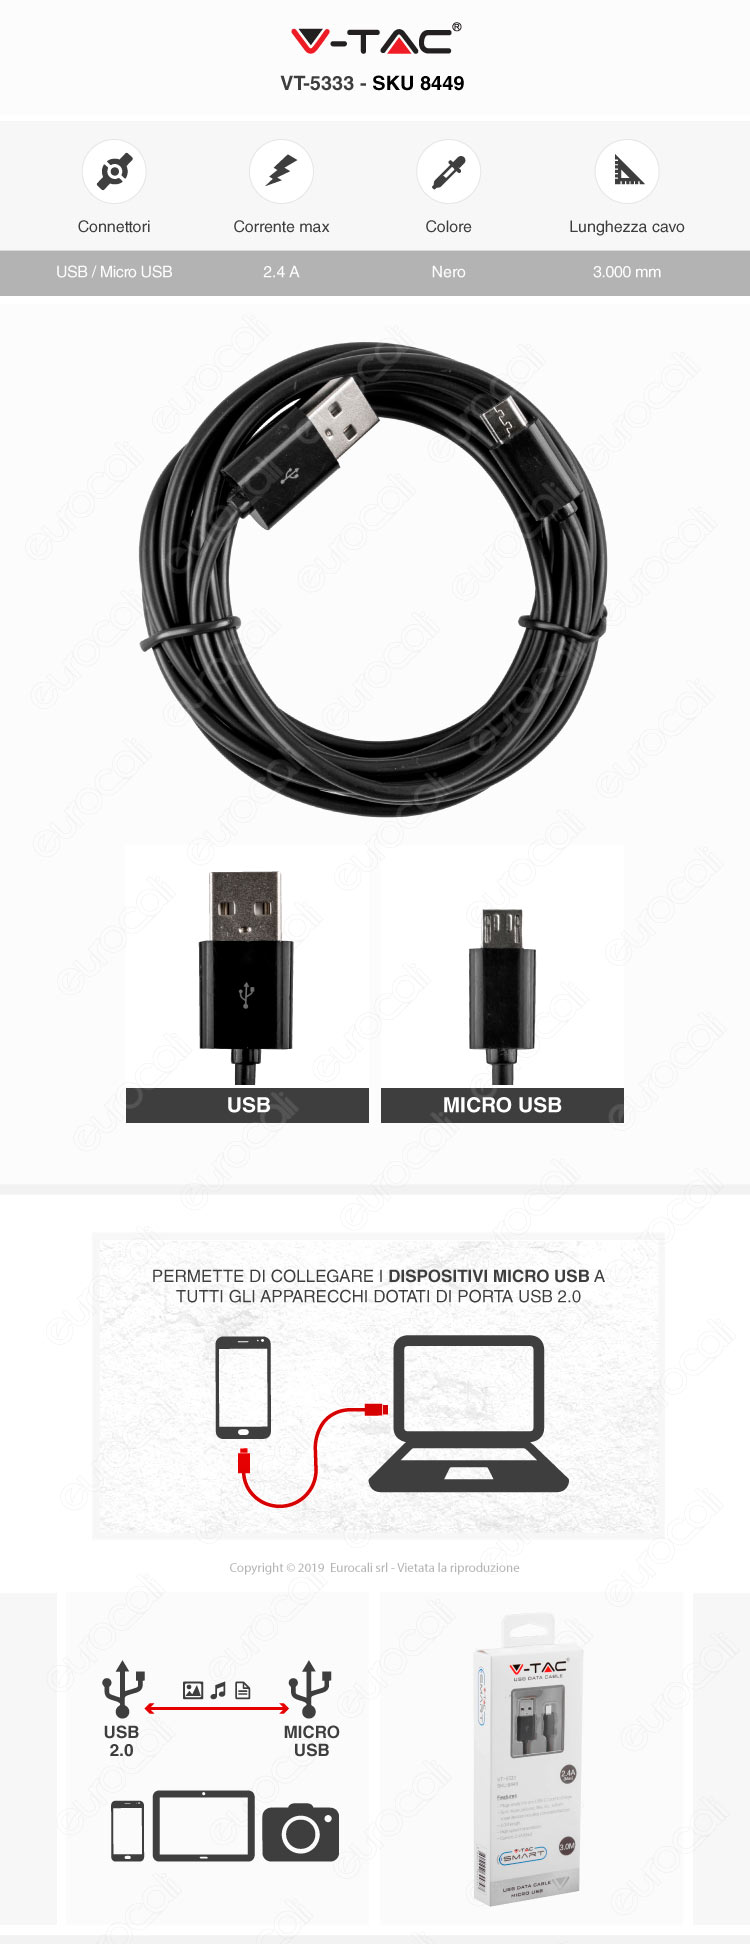 V-Tac VT-5333 USB Data Cable Micro USB Cavo Colore Nero 3mt 